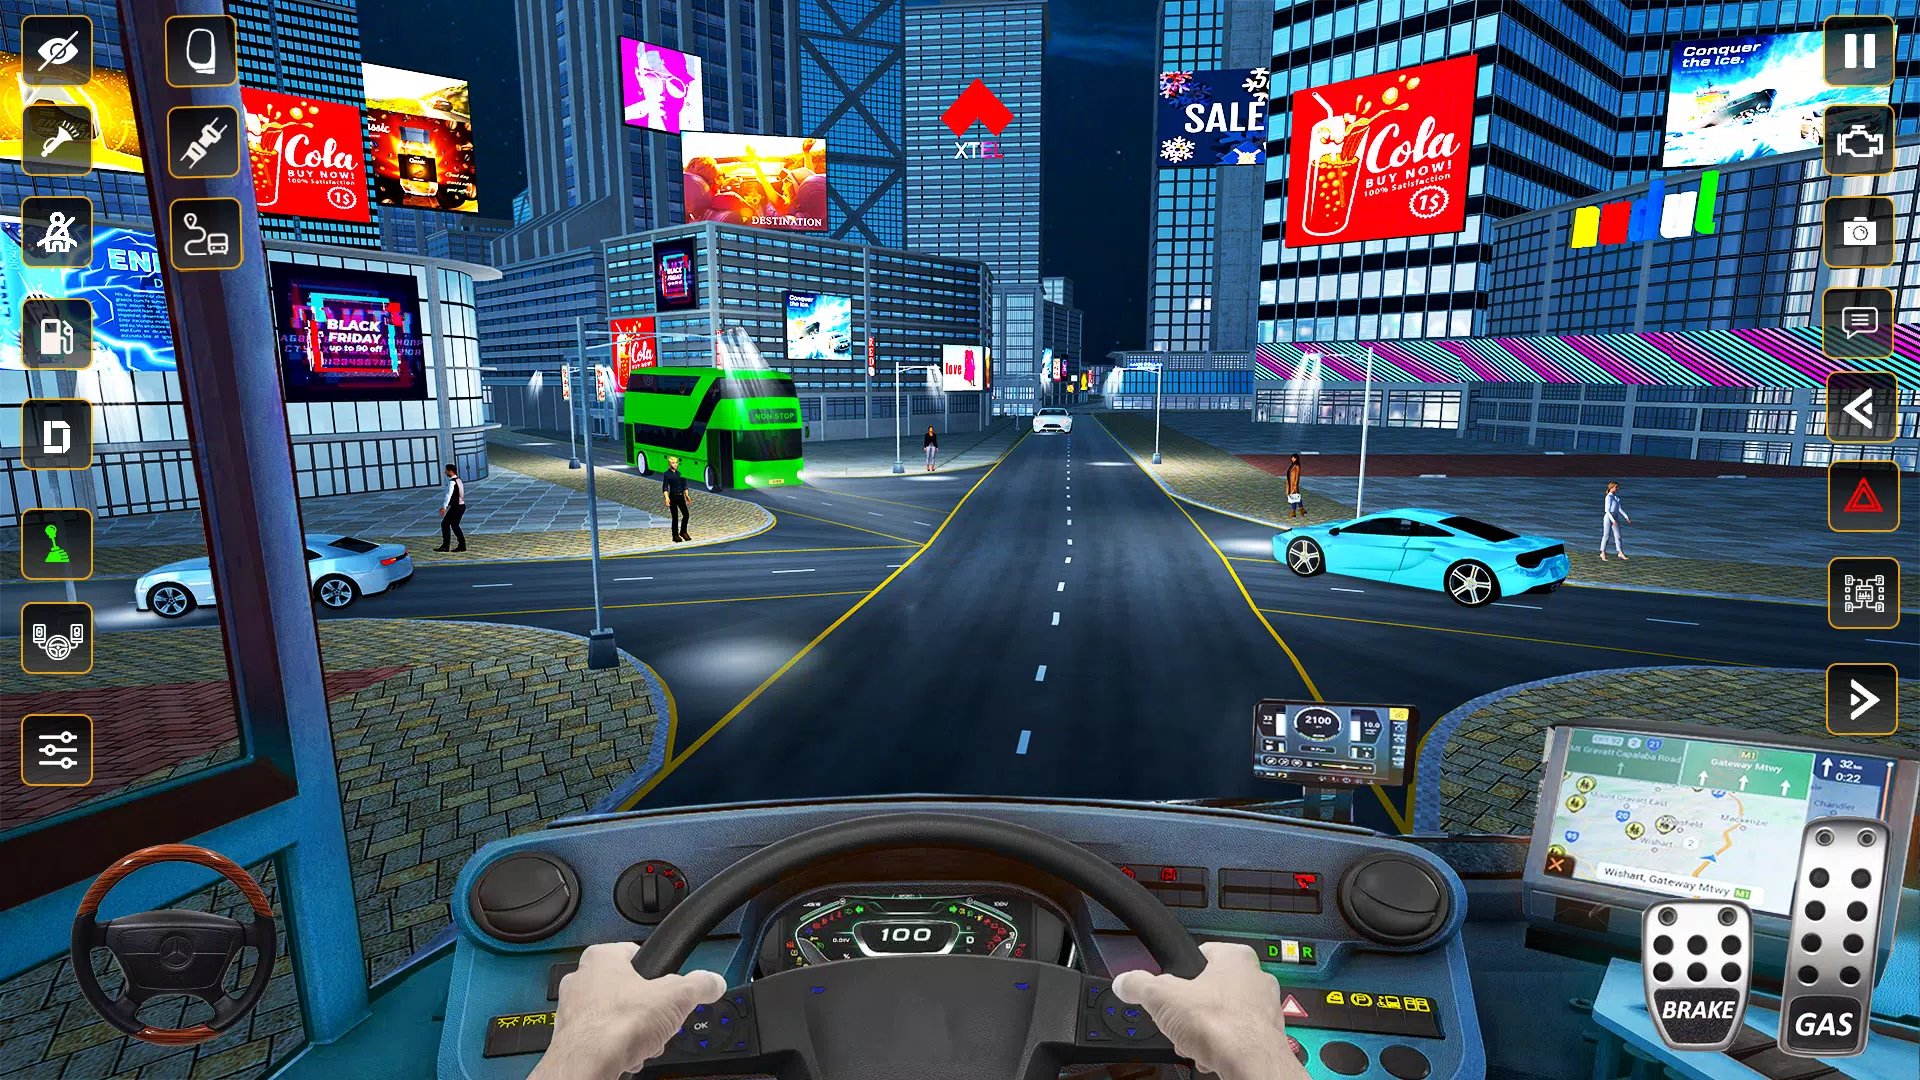 Download do APK de jogo de dirigir ônibus viagem para Android